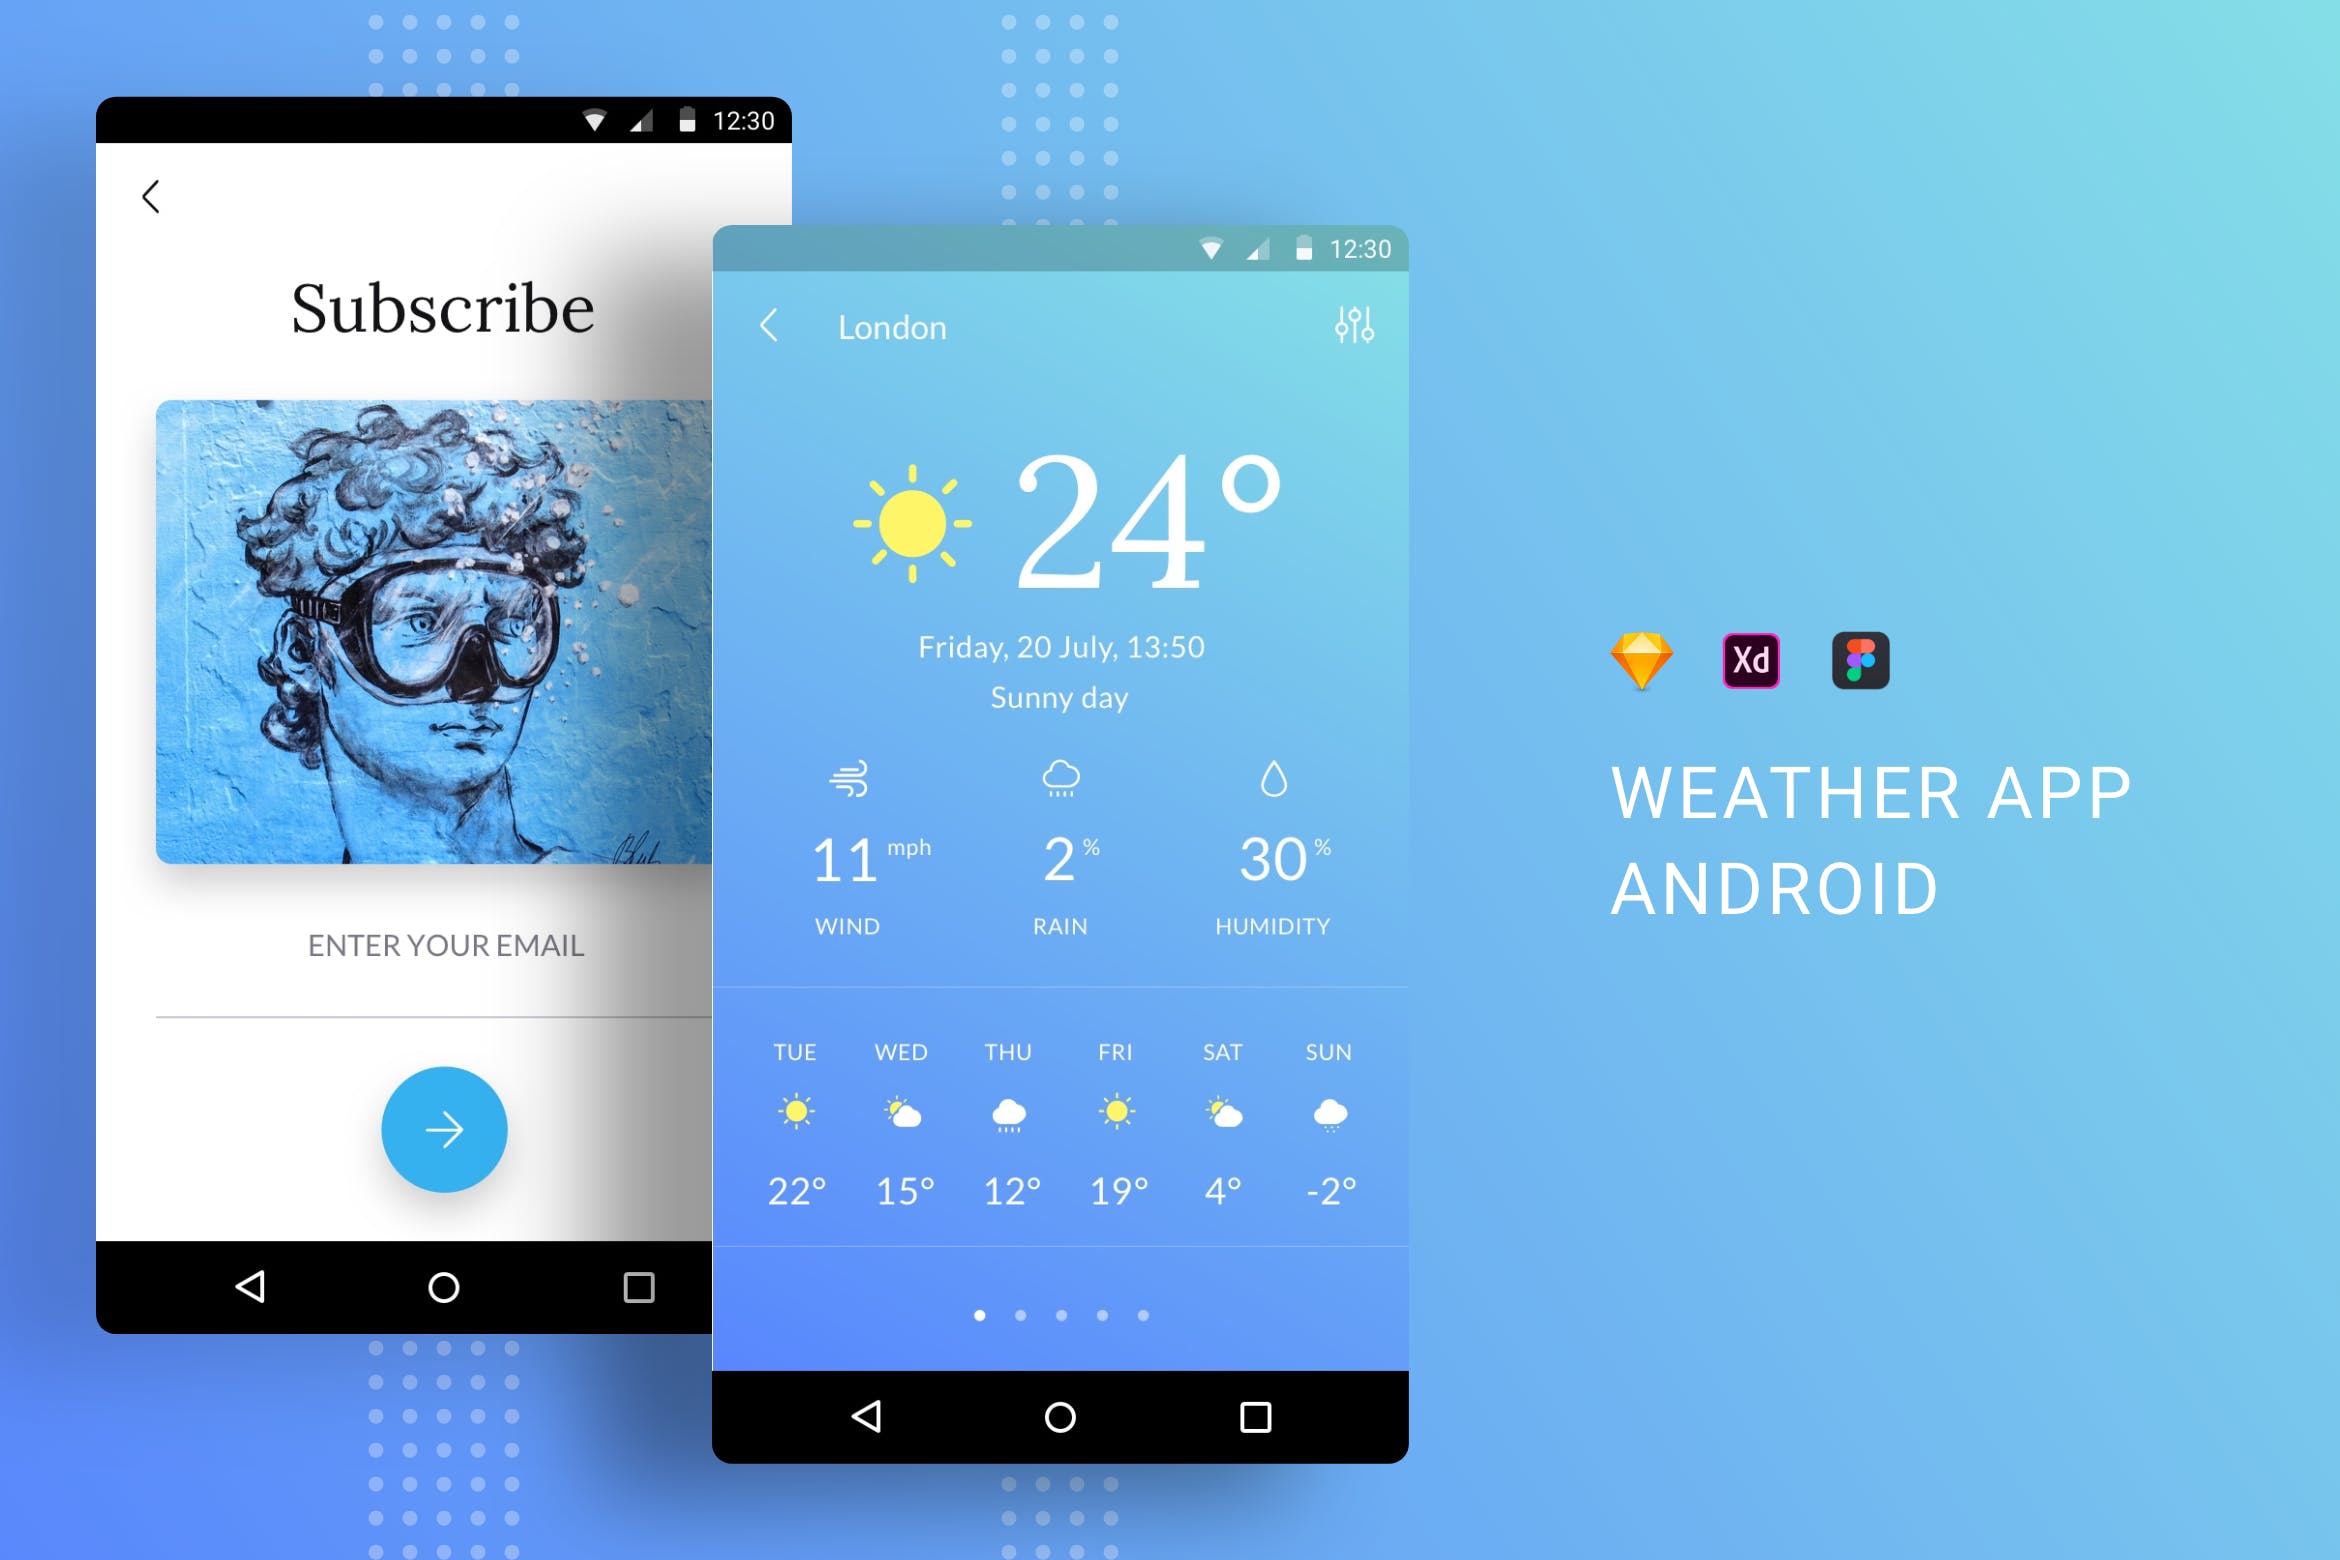 天气预报APP应用界面设计第一素材精选模板 Weather App UI Kit Android插图